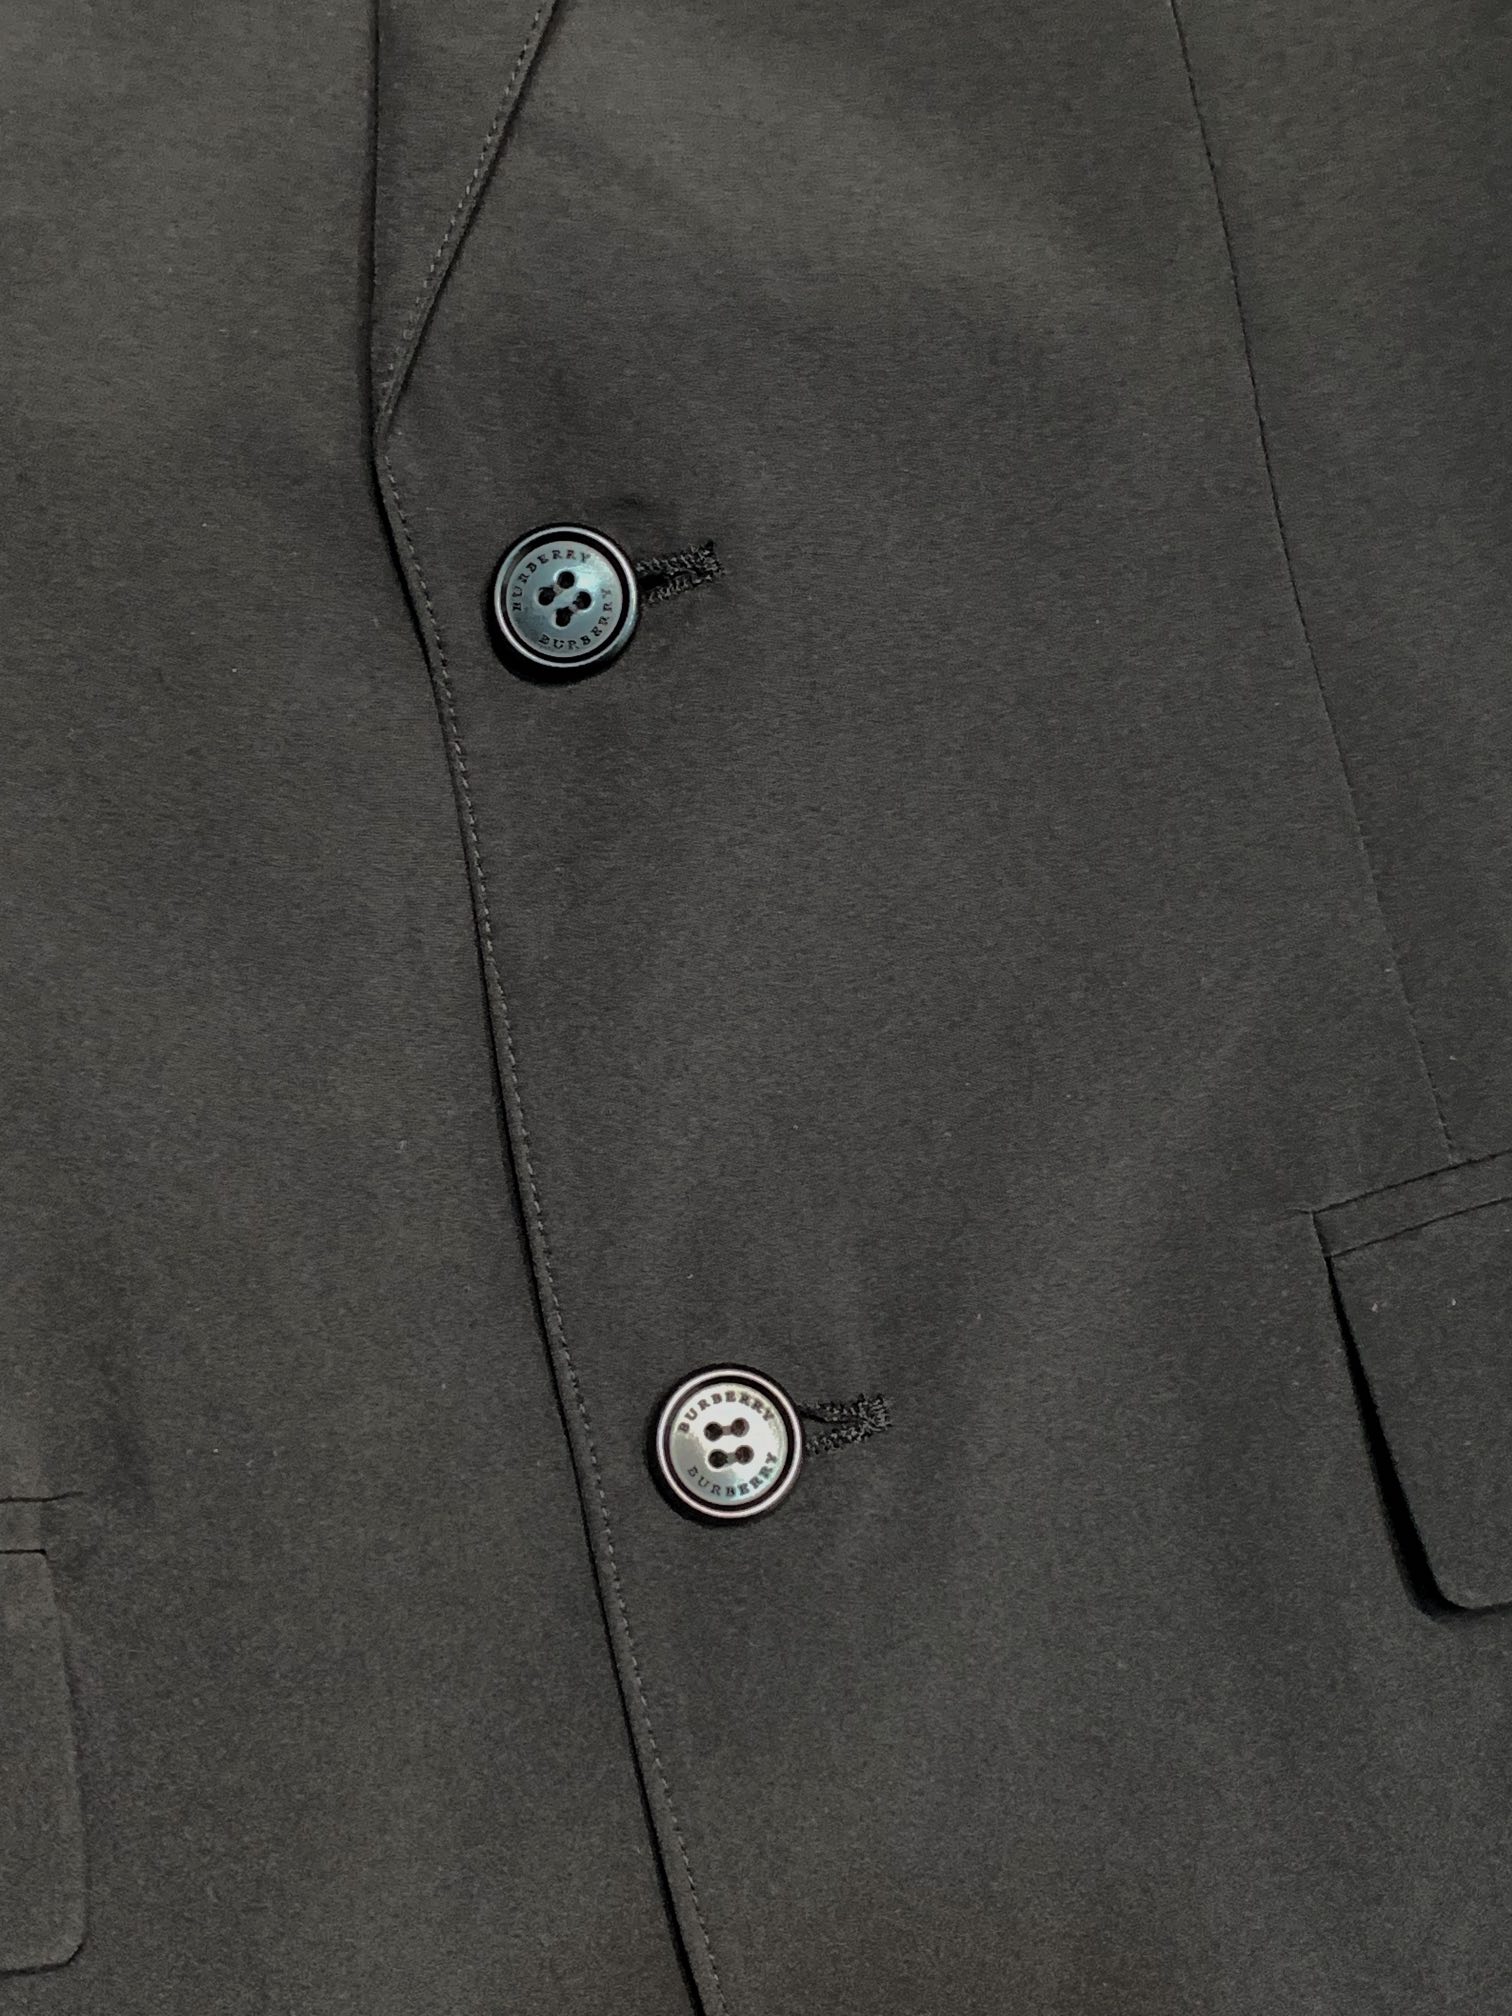 BBR巴宝莉独家专供新款西服外套简约休闲西装外套进口原版聚酯纤维面料透气柔软保暖性很强笔挺垂感十足整件衣